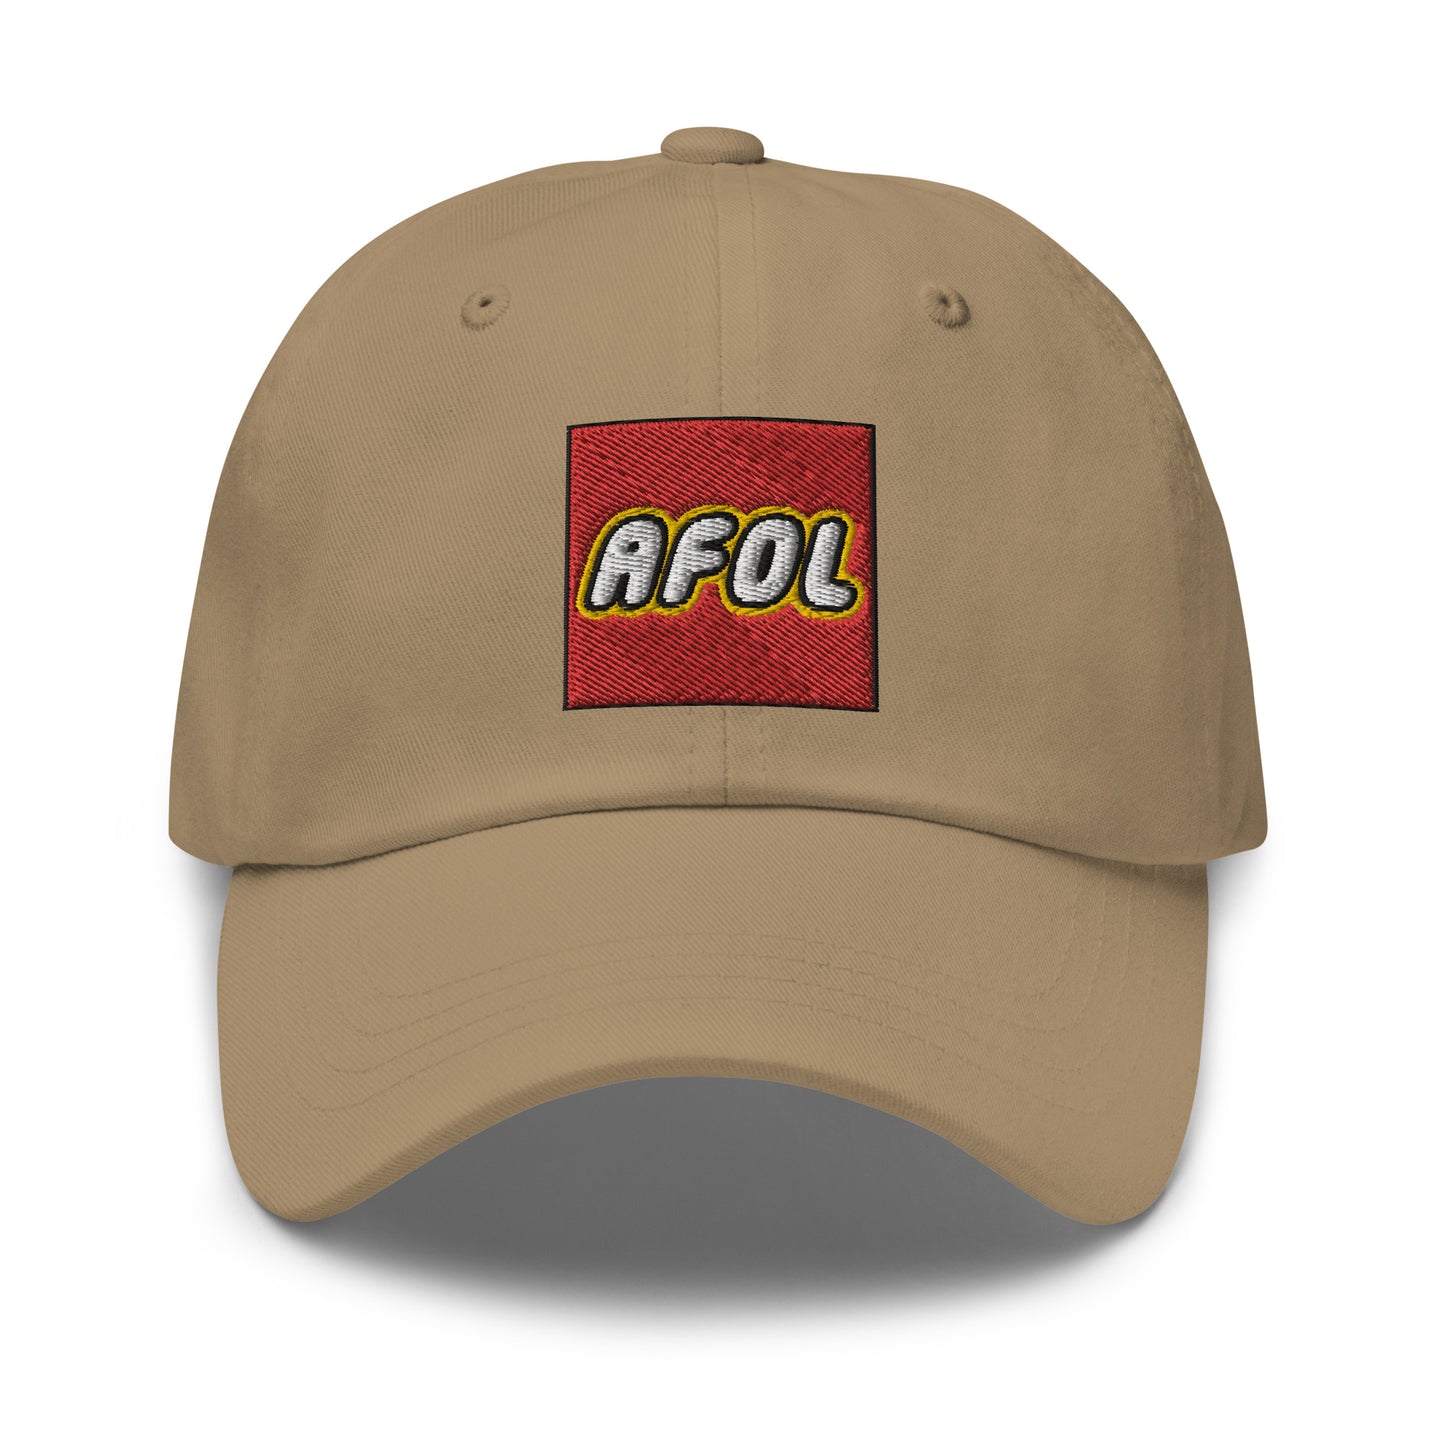 AFOL (Adult Fan of LEGO) Dad Hat